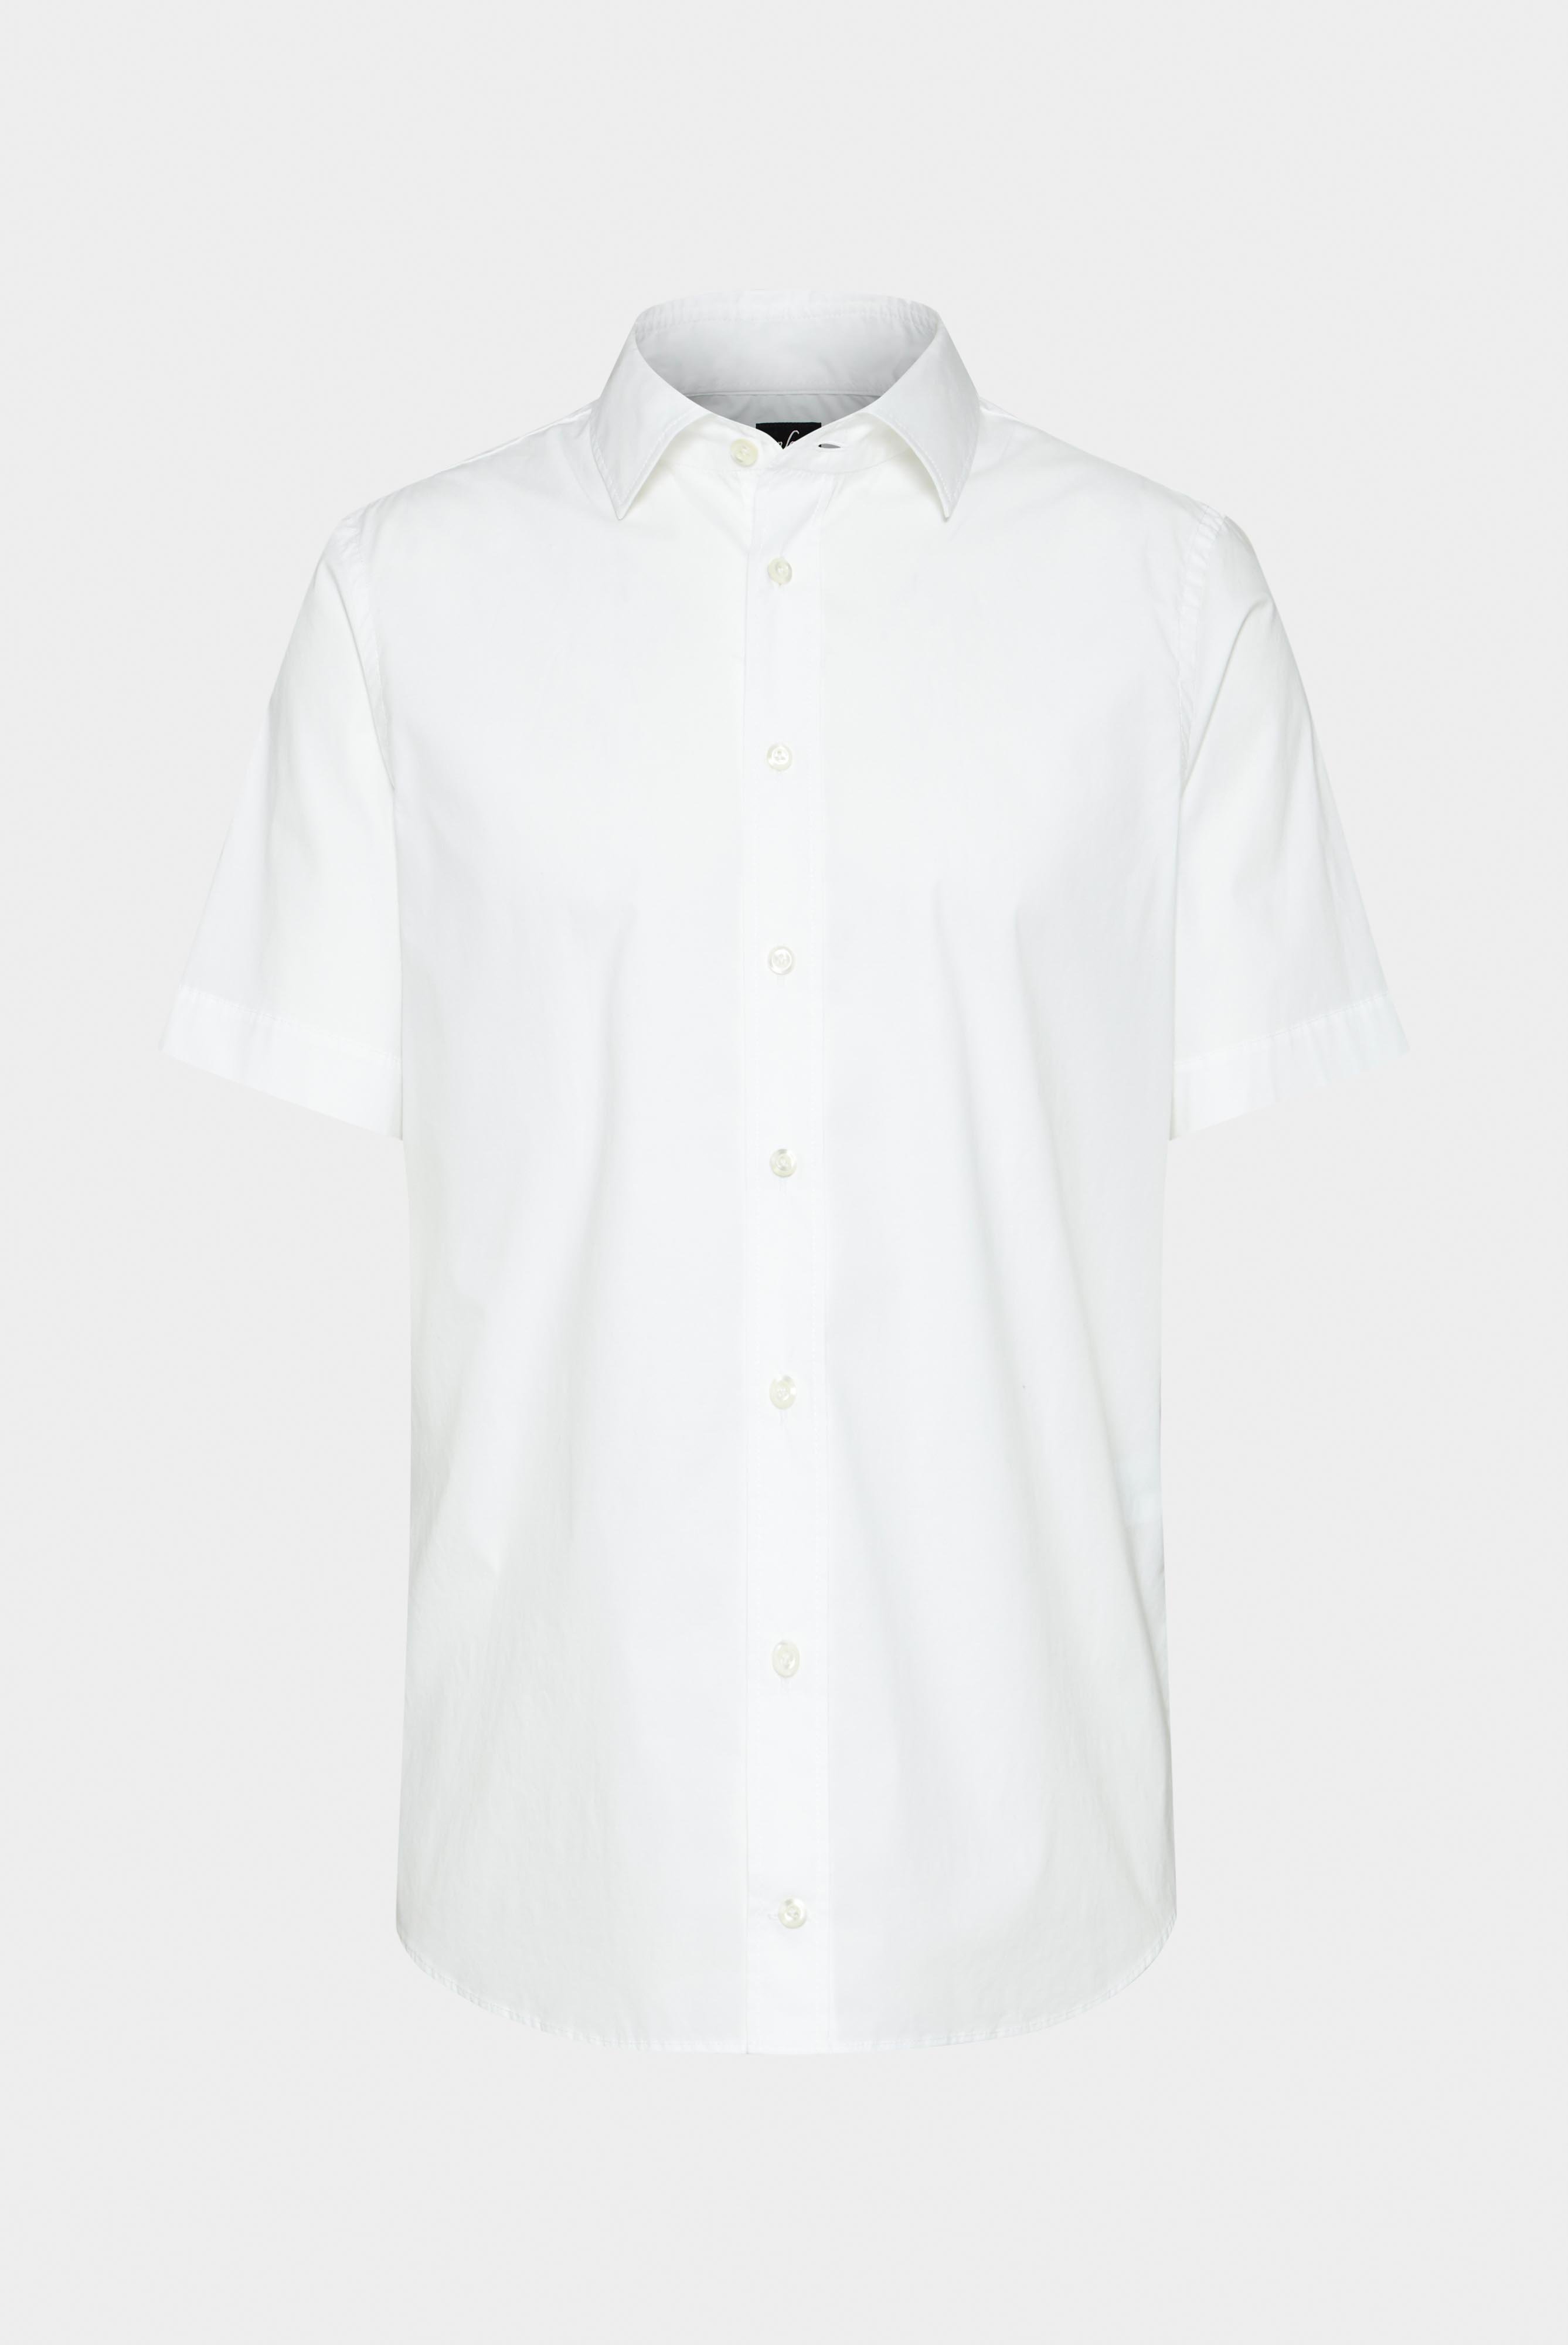 Kurzarm Hemden+Hemd aus leichter Baumwolle mit Stretch-Hemdärmeln+20.2035.Q2.H00240.000.41